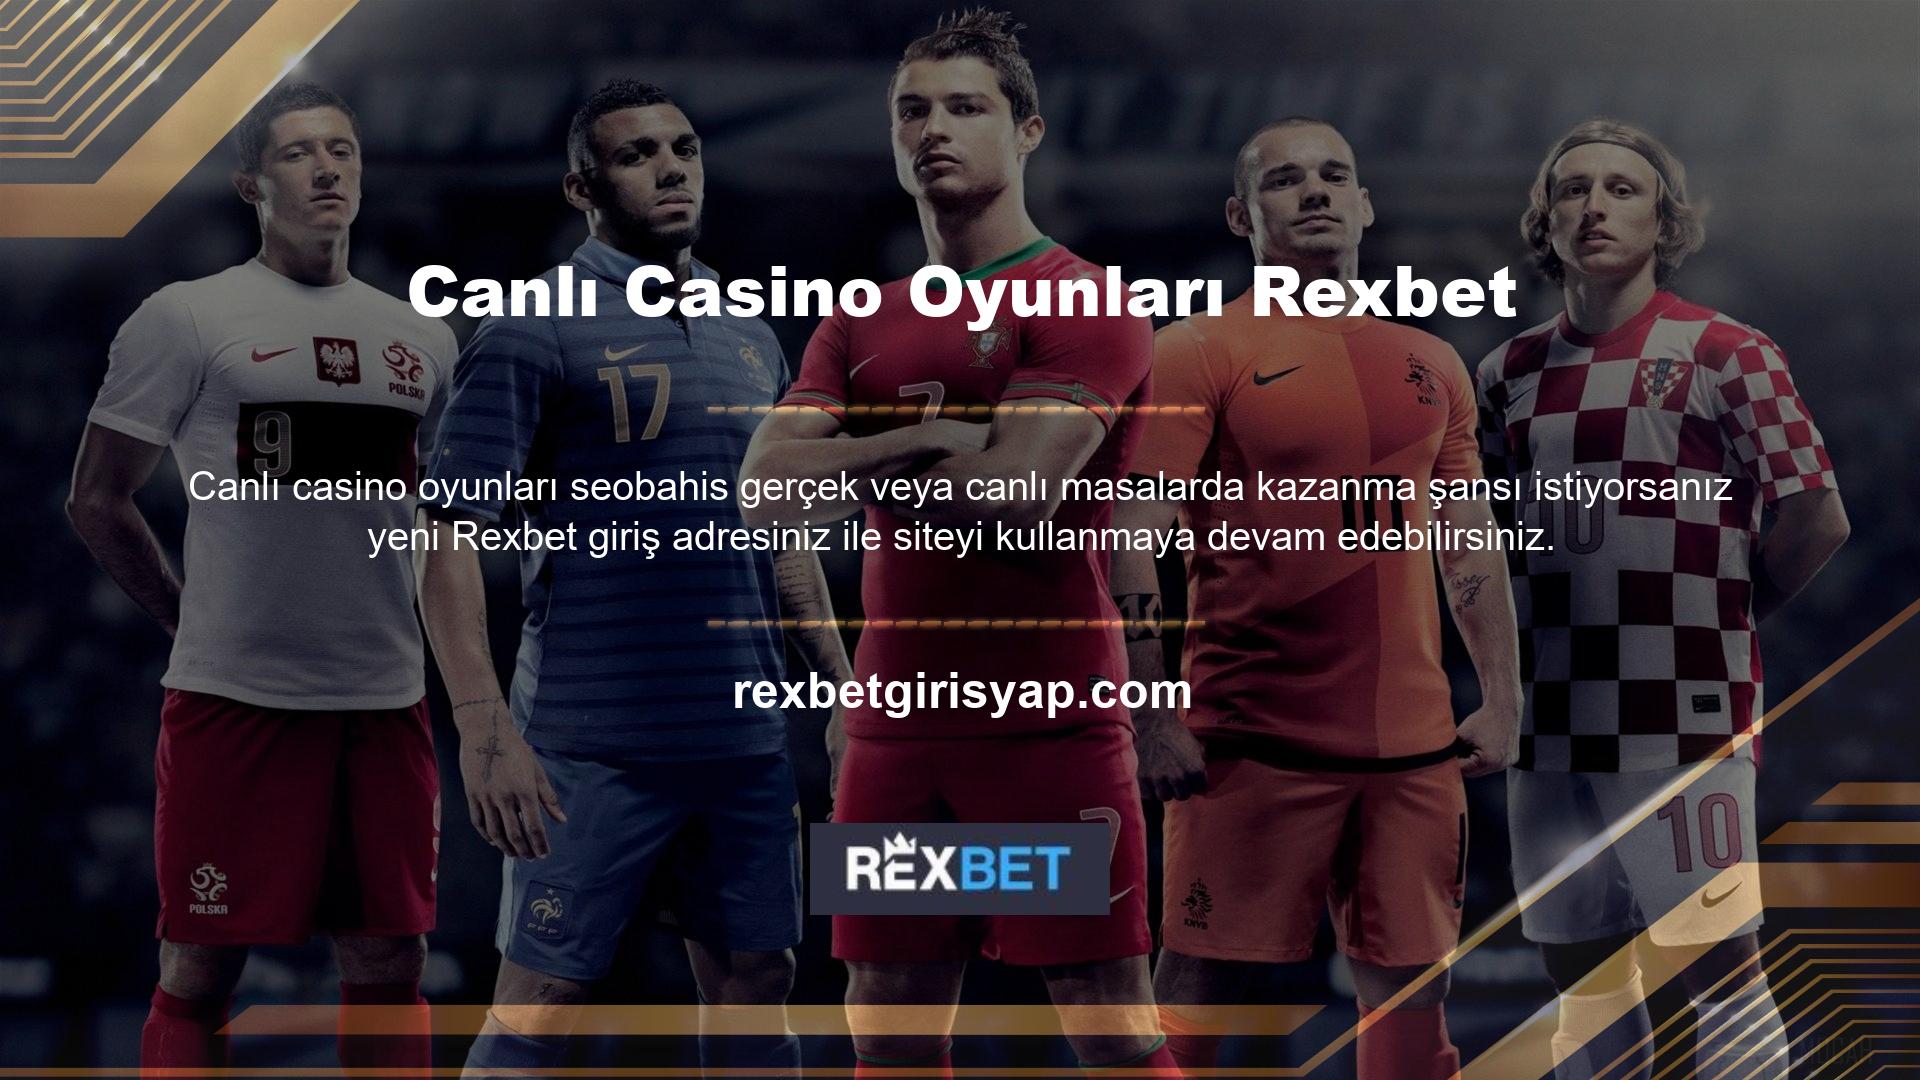 Canlı casino oyunları yeni Rexbet adresinde aynı koşullarla sunulmaya devam edecektir